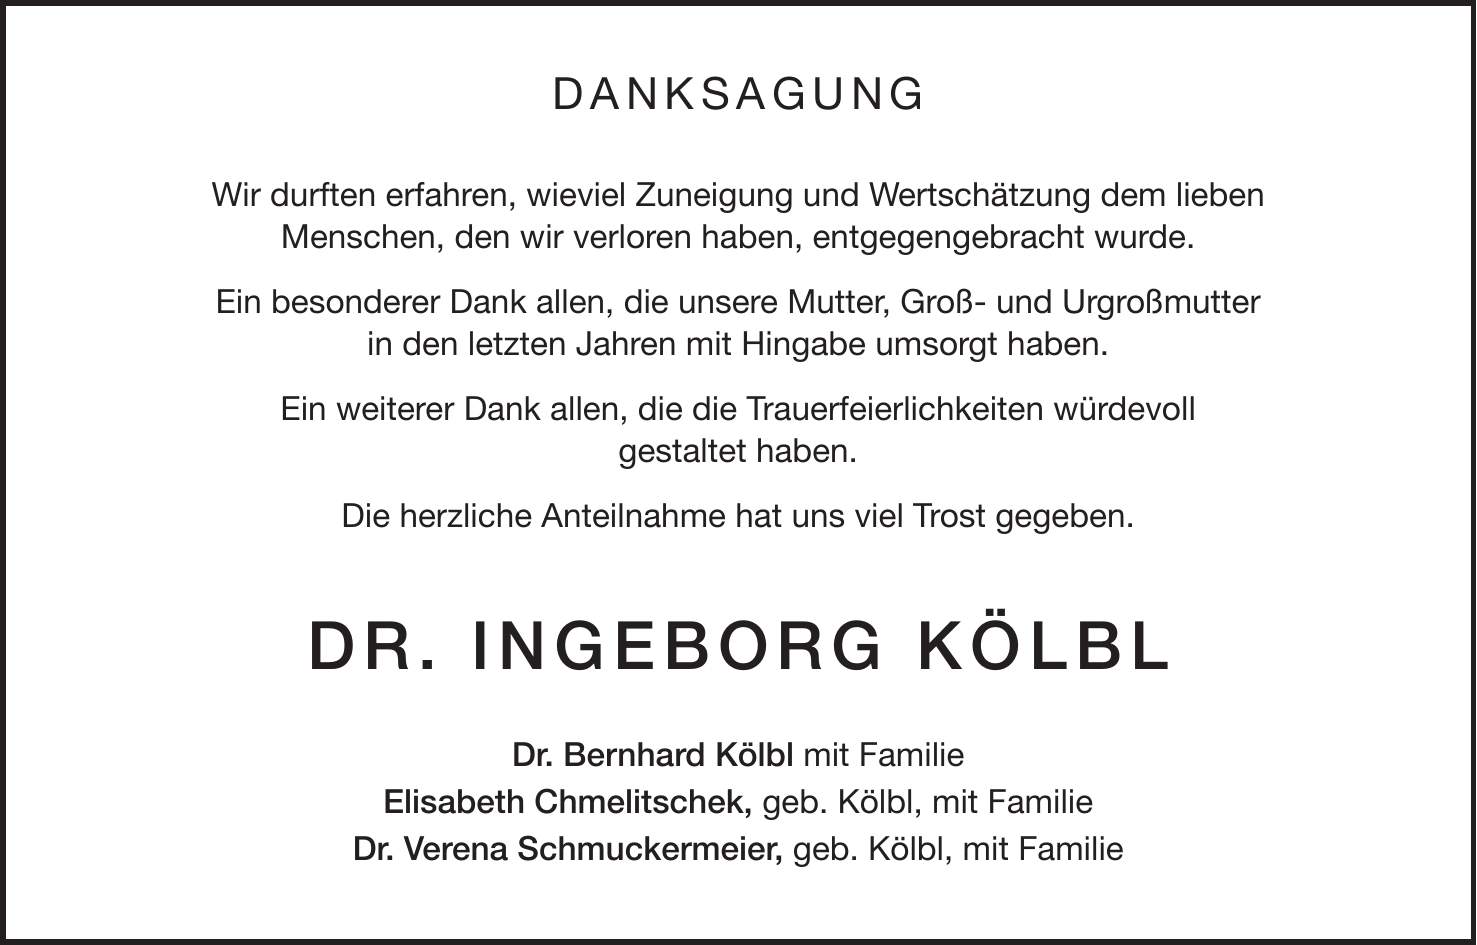 DANKSAGUNG Wir durften erfahren, wieviel Zuneigung und Wertschätzung dem lieben Menschen, den wir verloren haben, entgegengebracht wurde. Ein besonderer Dank allen, die unsere Mutter, Groß- und Urgroßmutter in den letzten Jahren mit Hingabe umsorgt haben. Ein weiterer Dank allen, die die Trauerfeierlichkeiten würdevoll gestaltet haben. Die herzliche Anteilnahme hat uns viel Trost gegeben. Dr. Ingeborg Kölbl Dr. Bernhard Kölbl mit Familie Elisabeth Chmelitschek, geb. Kölbl, mit Familie Dr. Verena Schmuckermeier, geb. Kölbl, mit Familie